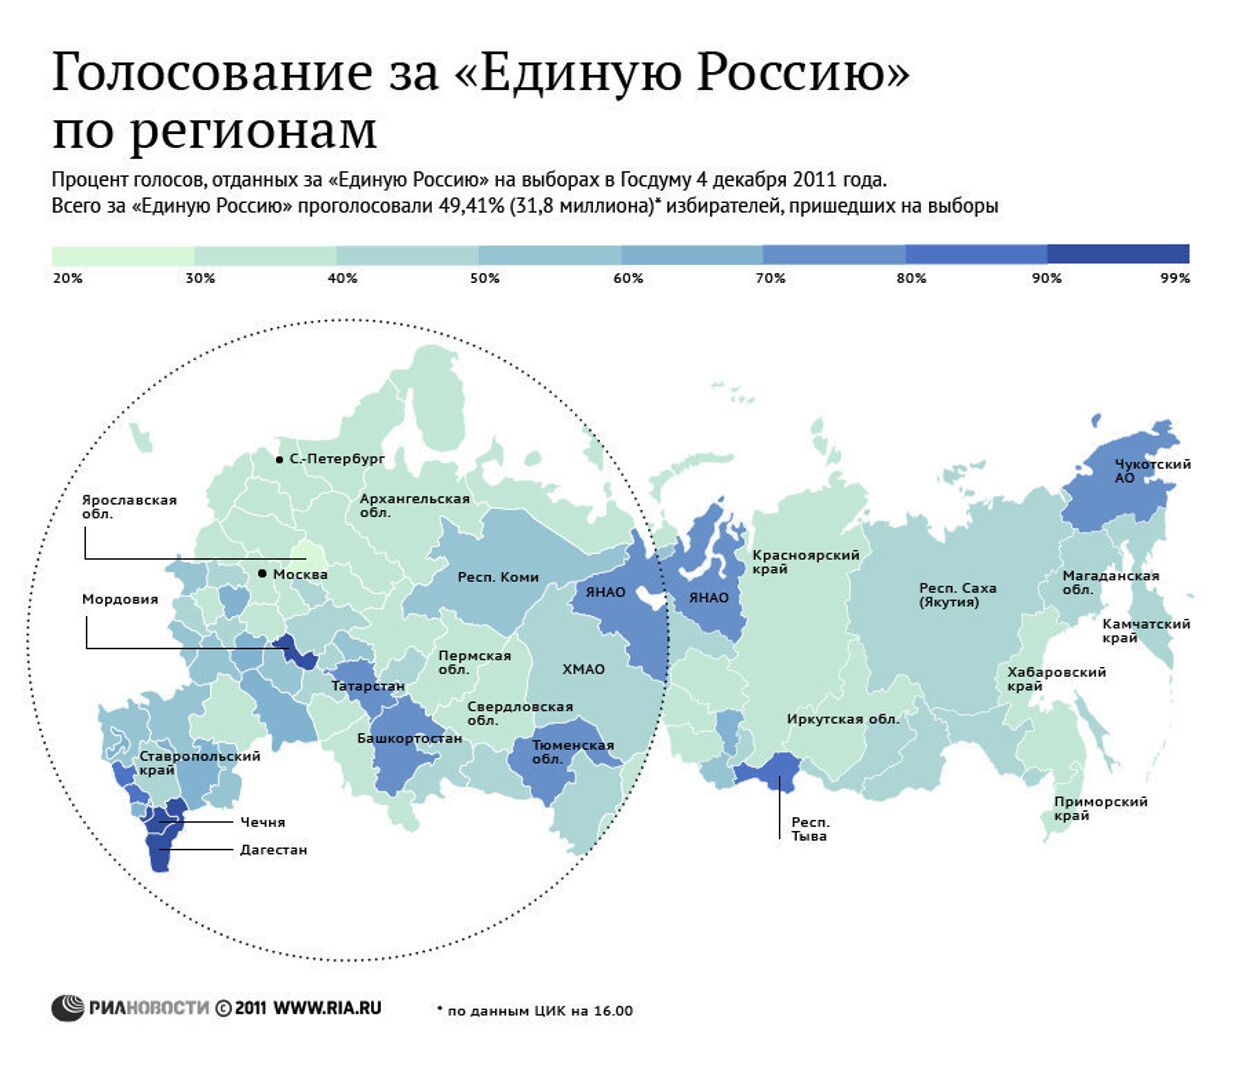 Голосование за «Единую Россию» в регионах страны